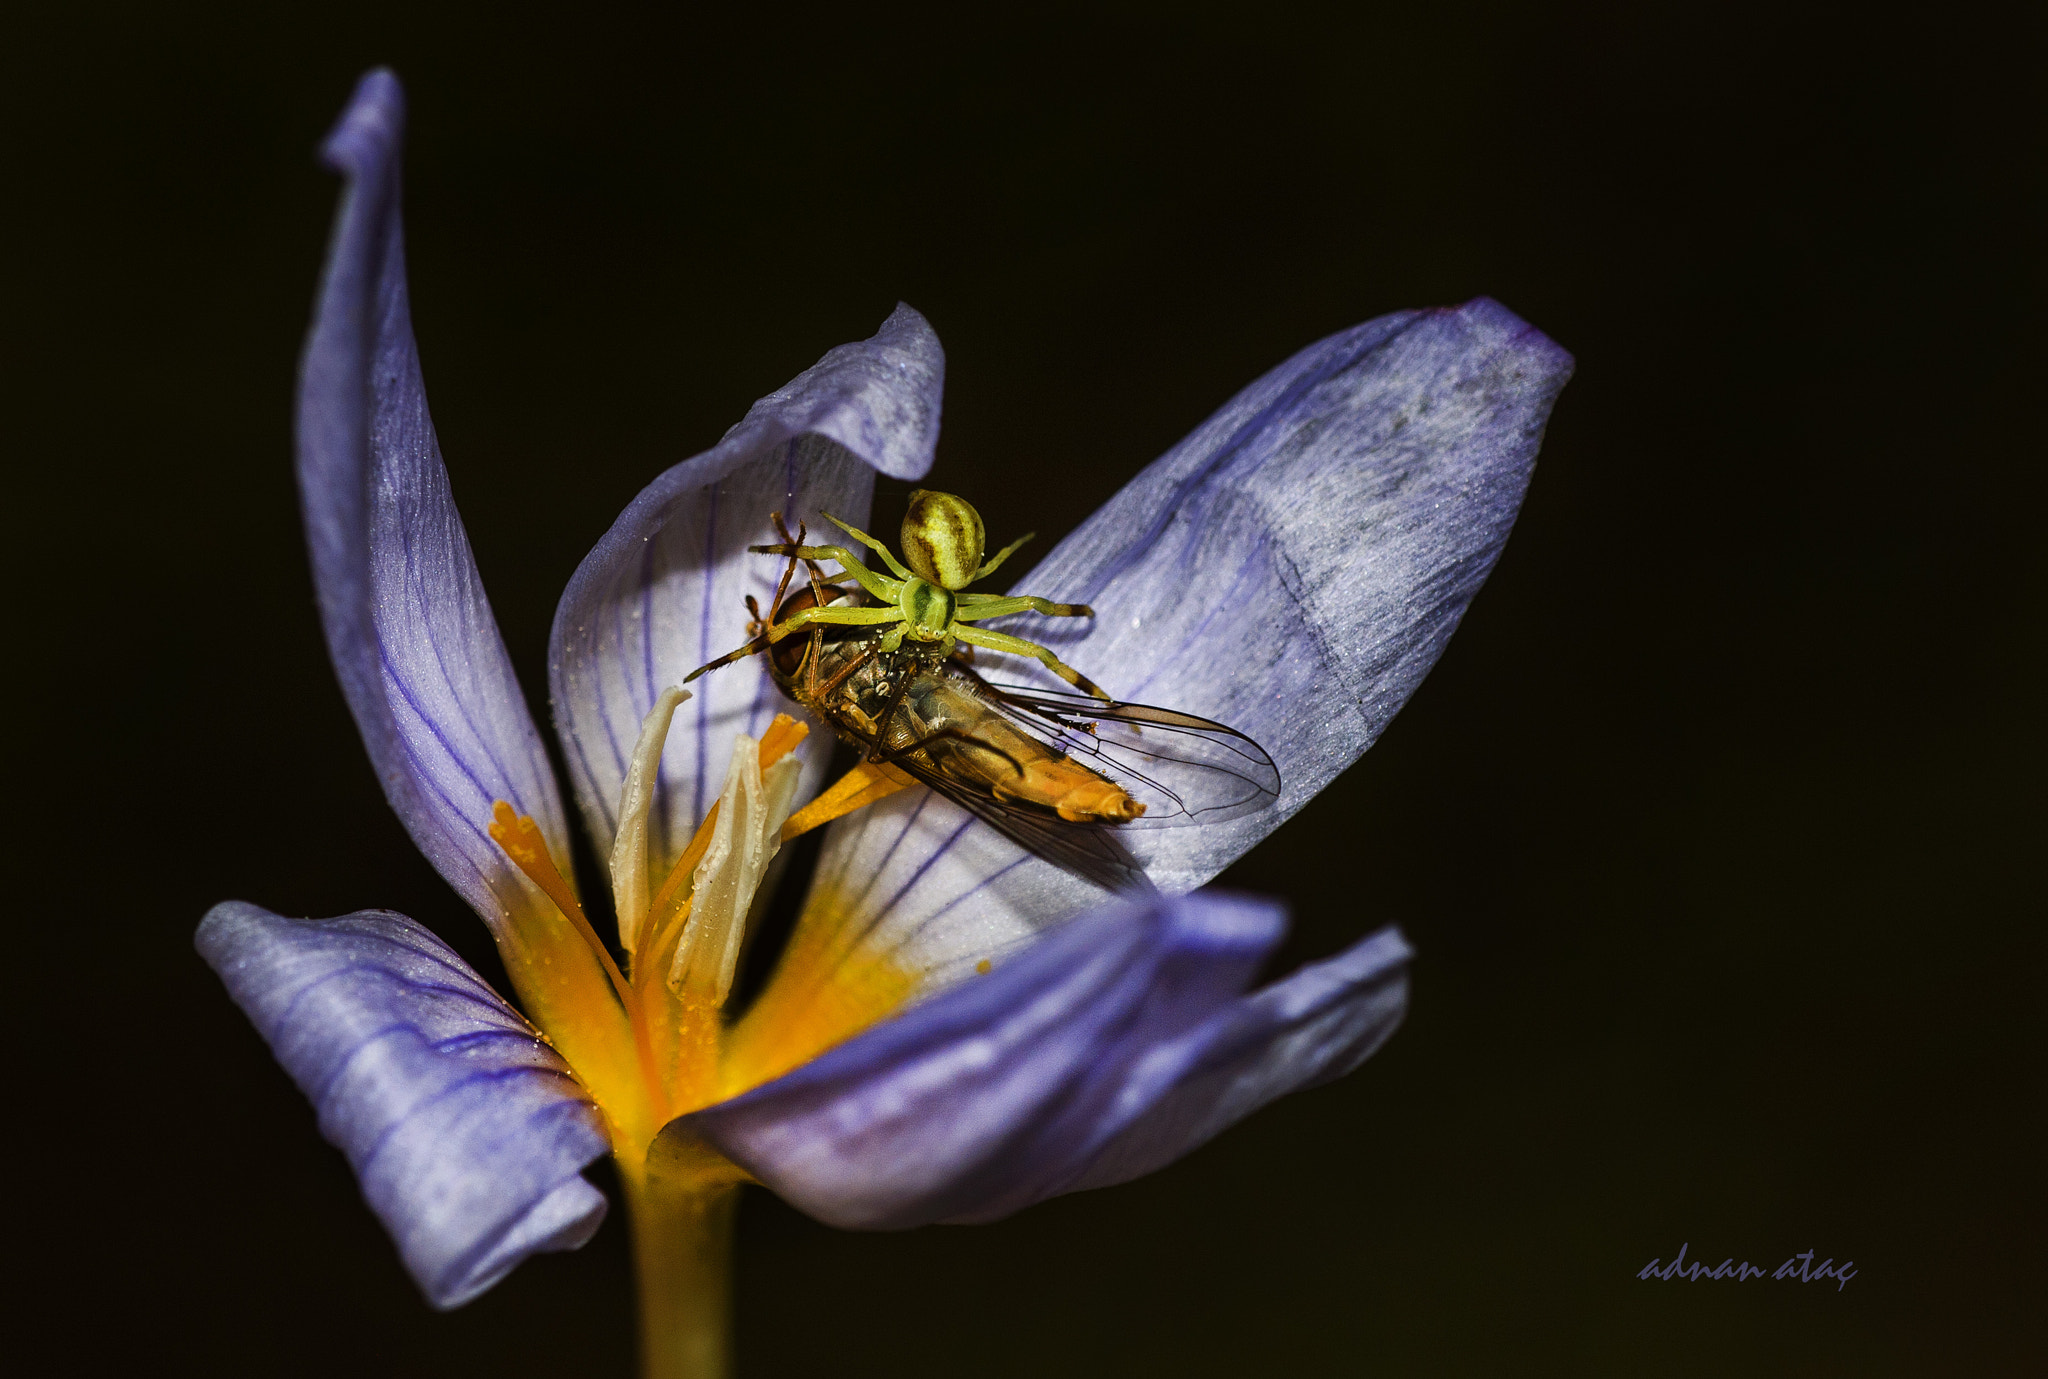 AF Zoom-Micro Nikkor 70-180mm f/4.5-5.6D ED sample photo. Çiğdem çiçeğinde (crocus) süslü sinek (episyrphus balteatus) avlamış yengeç örümceği (thomisus... photography